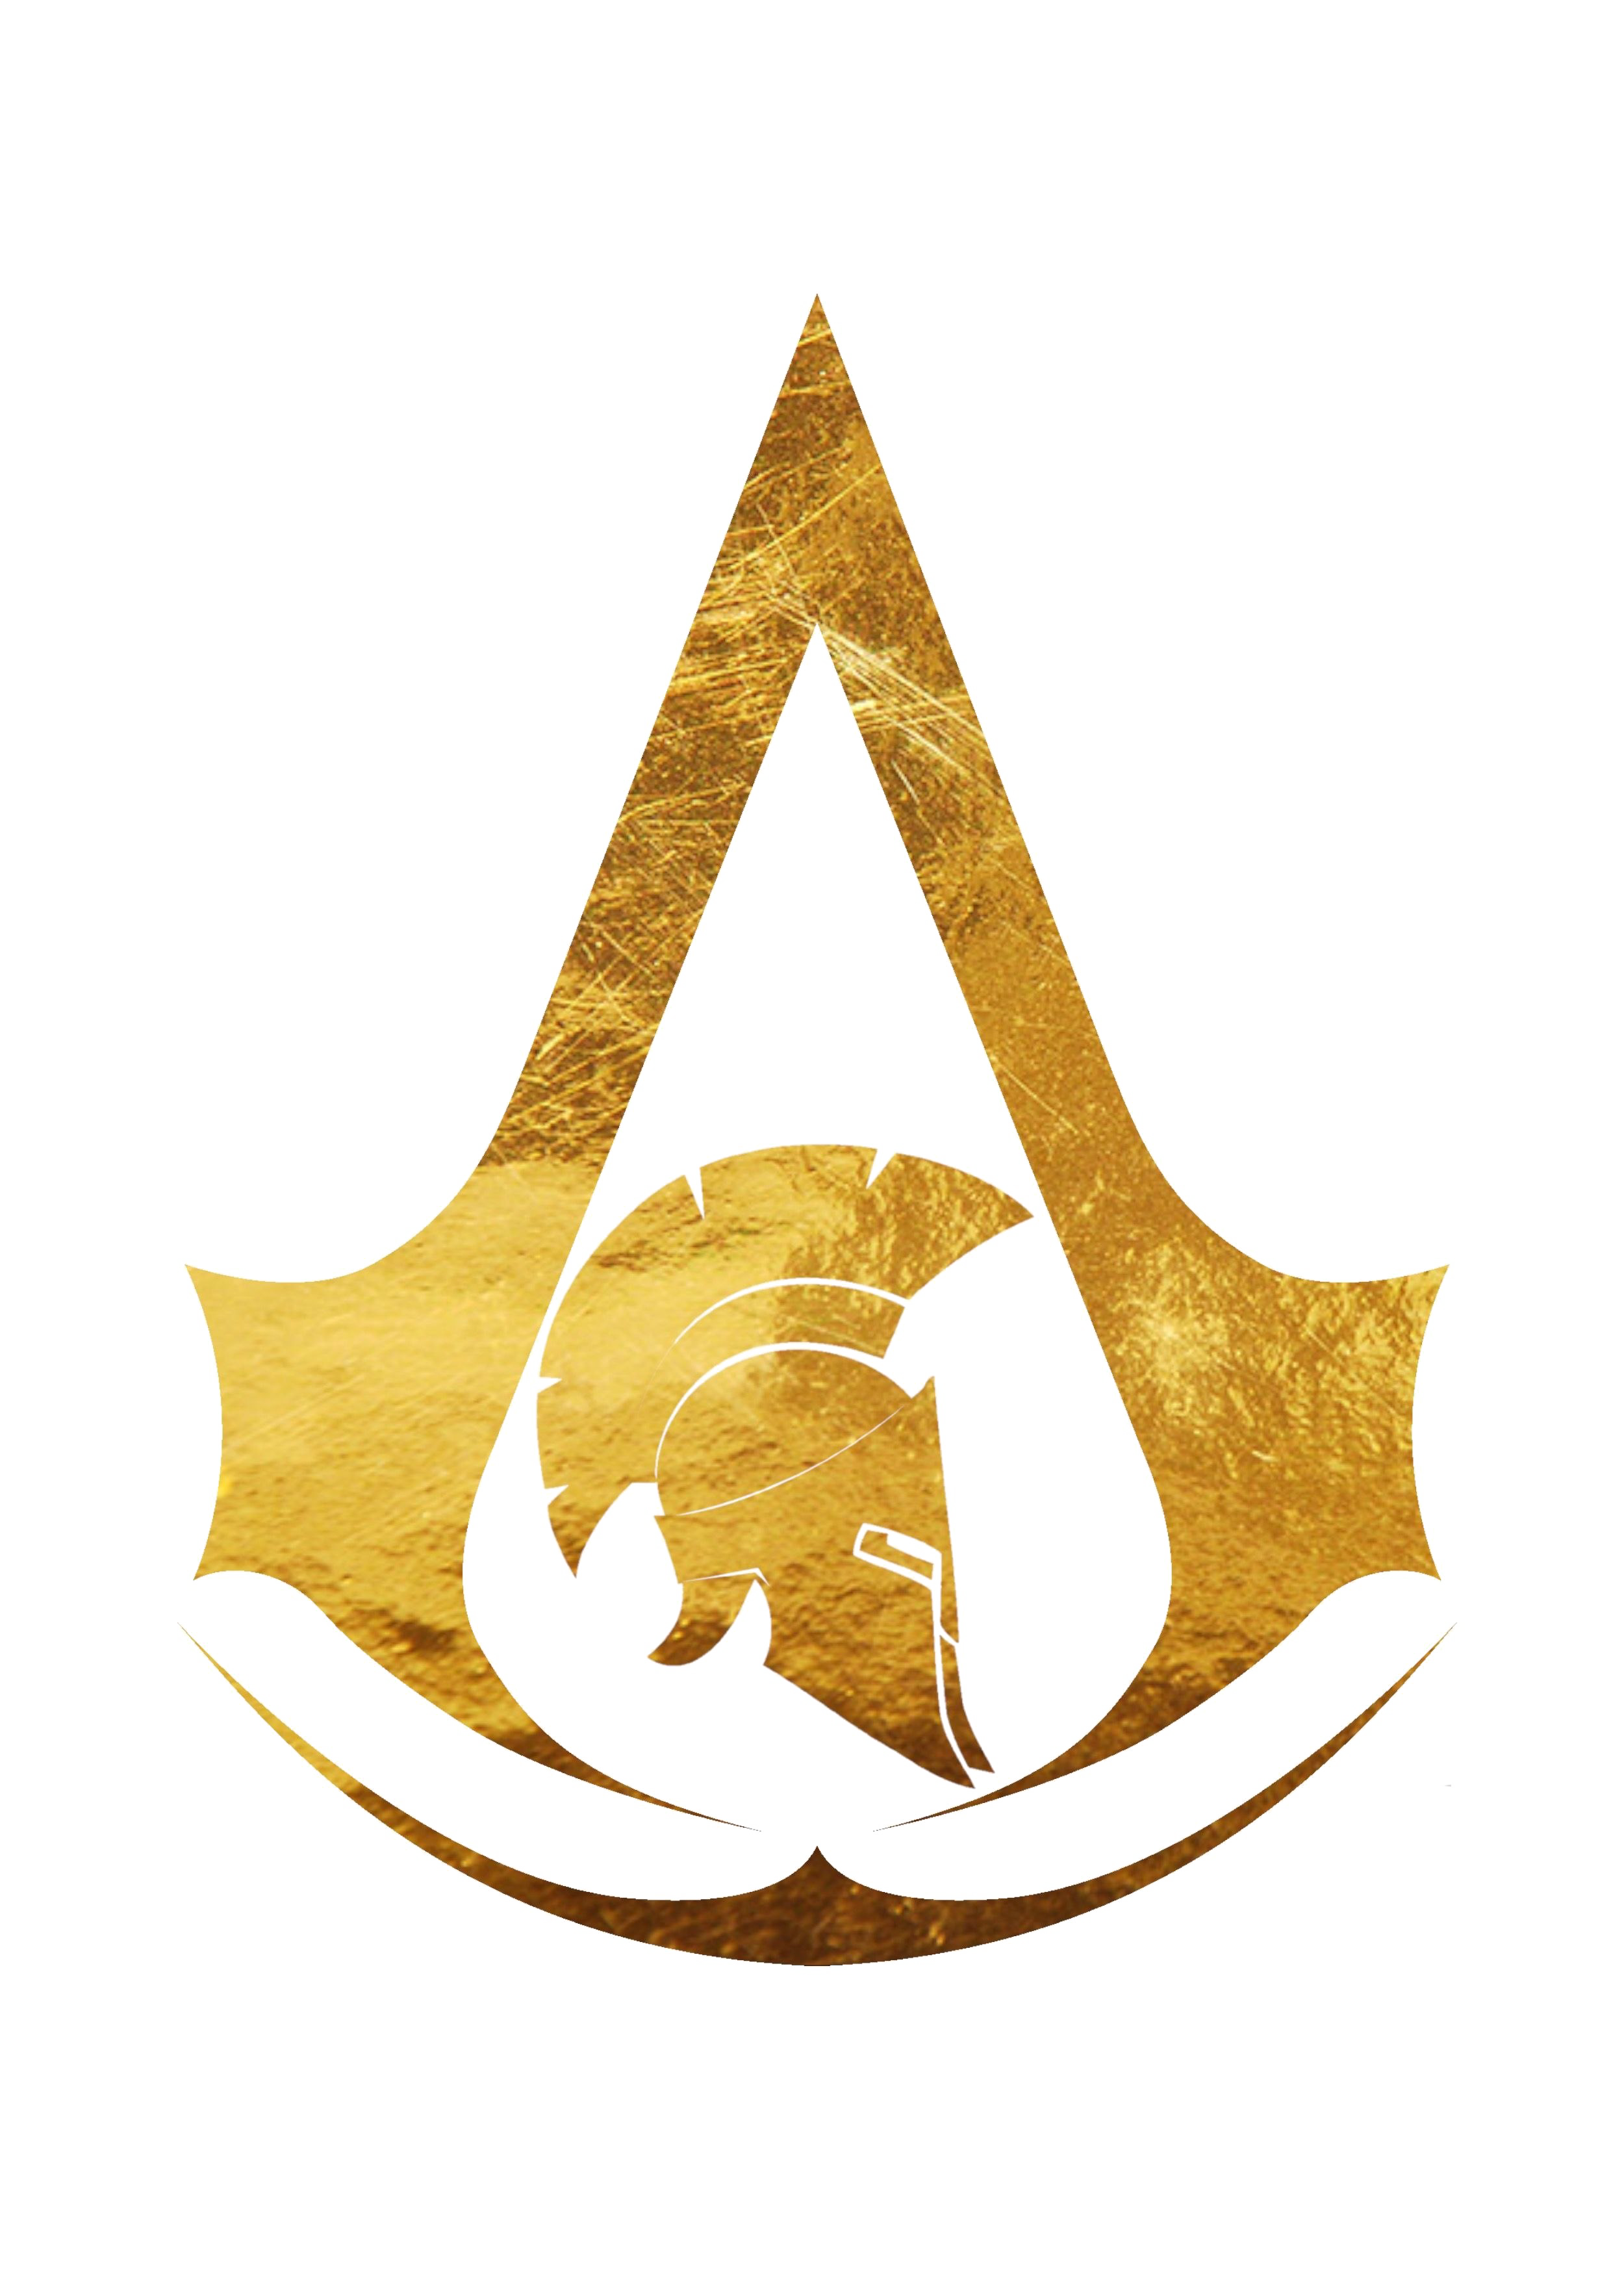 Assassins Creed Origins logo